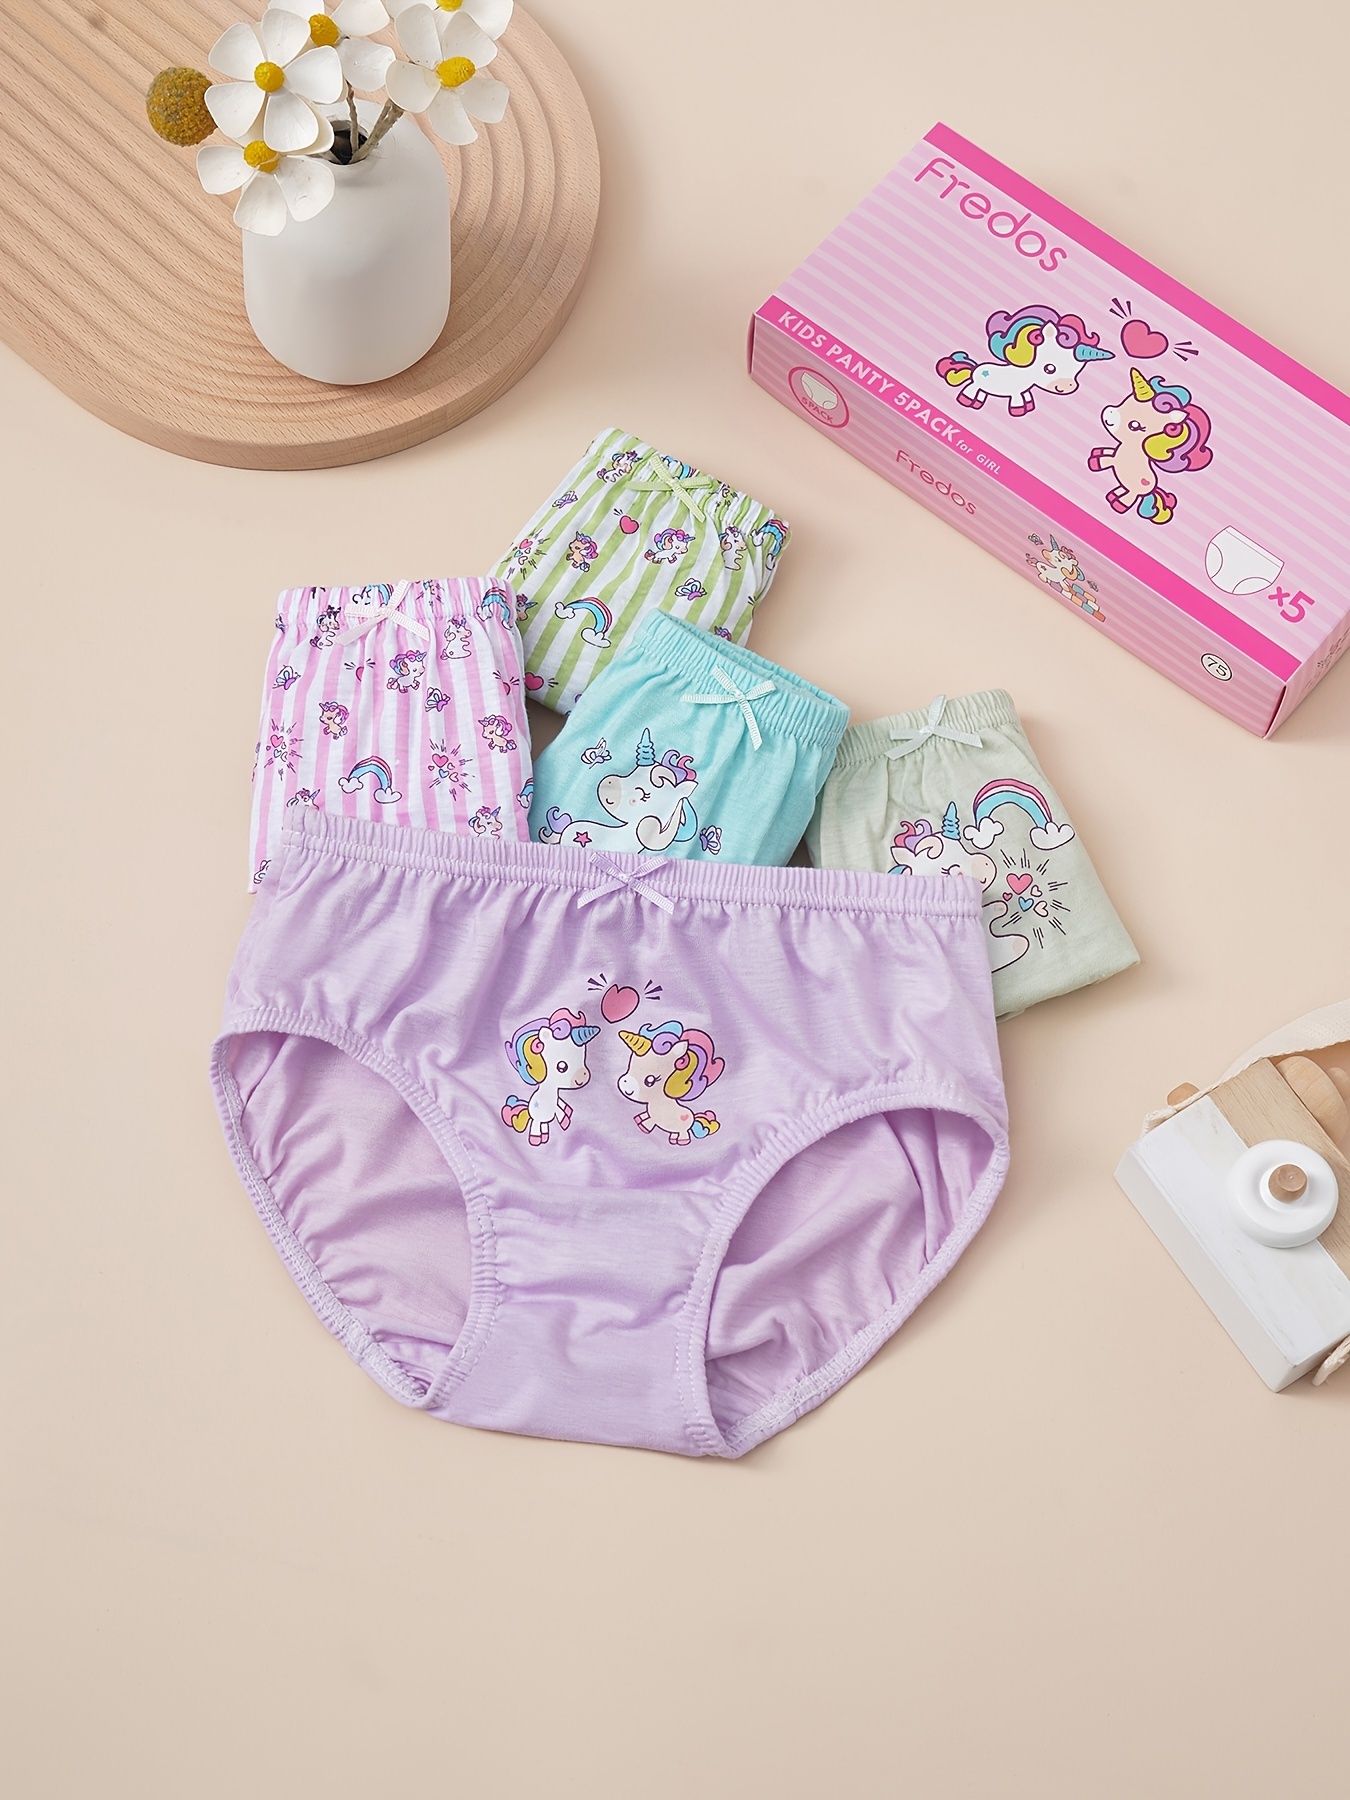 6 Pieces Girls Soft Cotton Underwear Toddler Briefs Soft Undies